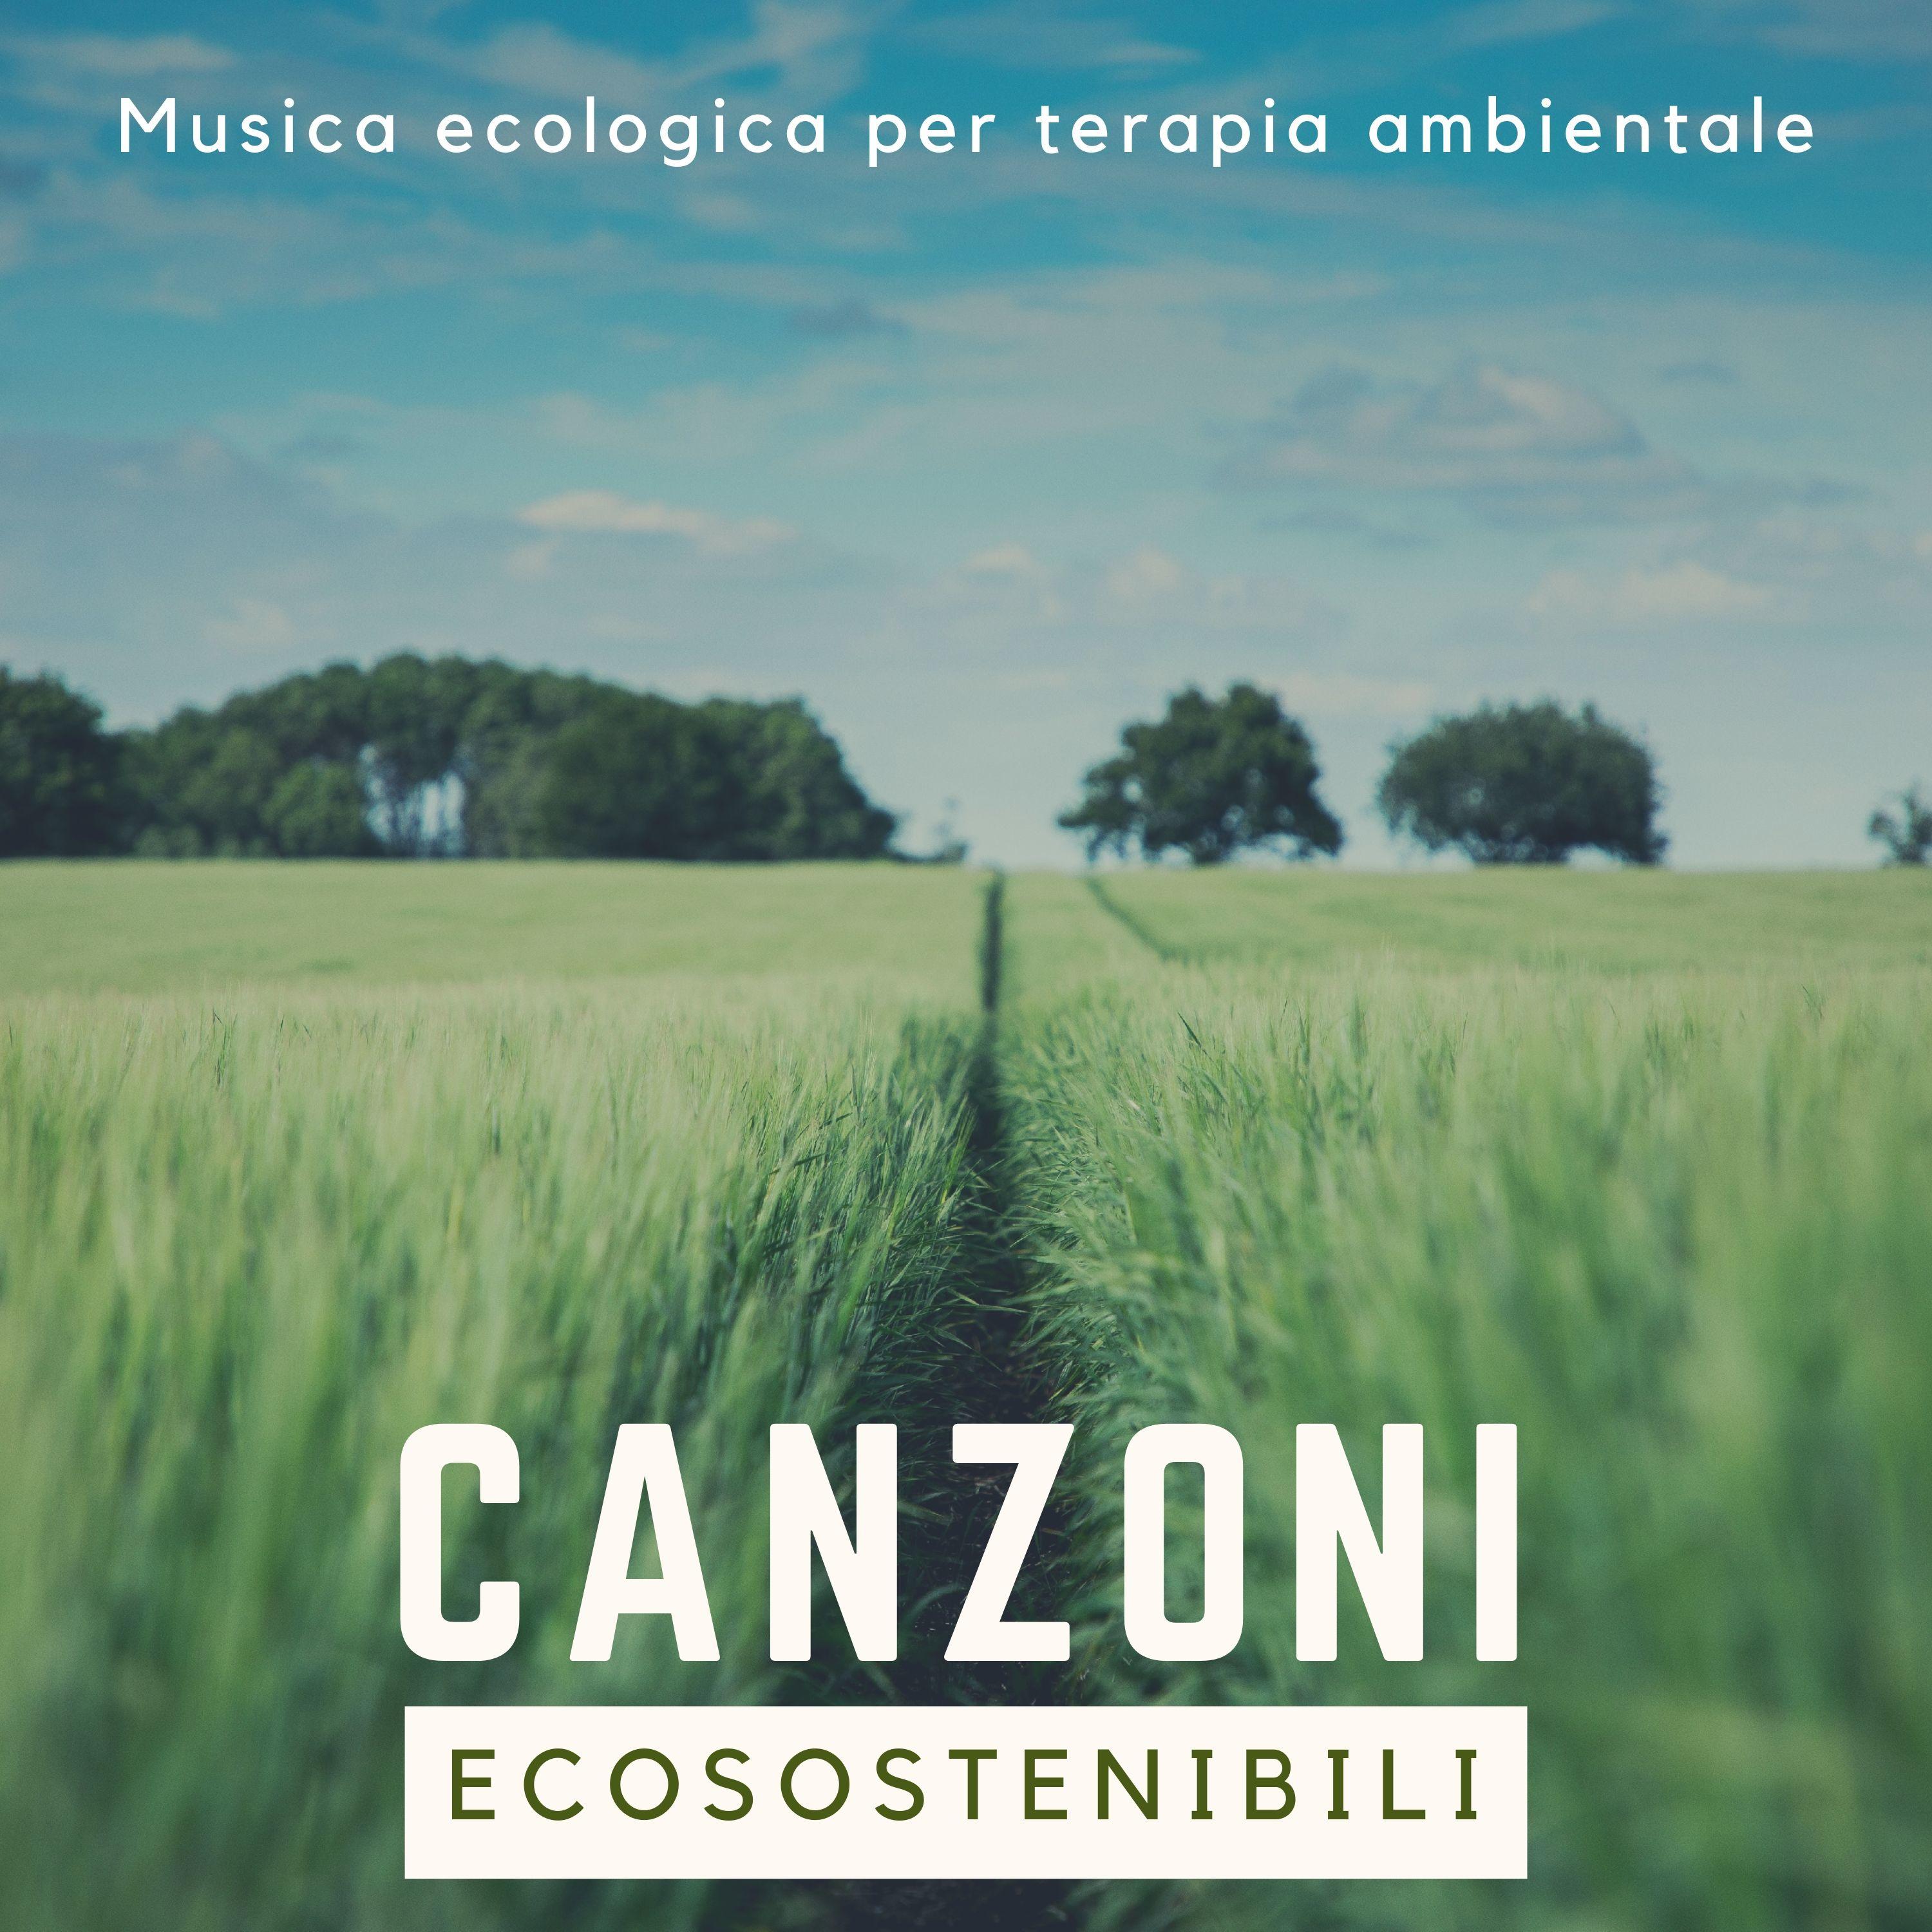 Canzoni Ecosostenibili - Musica ecologica per terapia ambientale